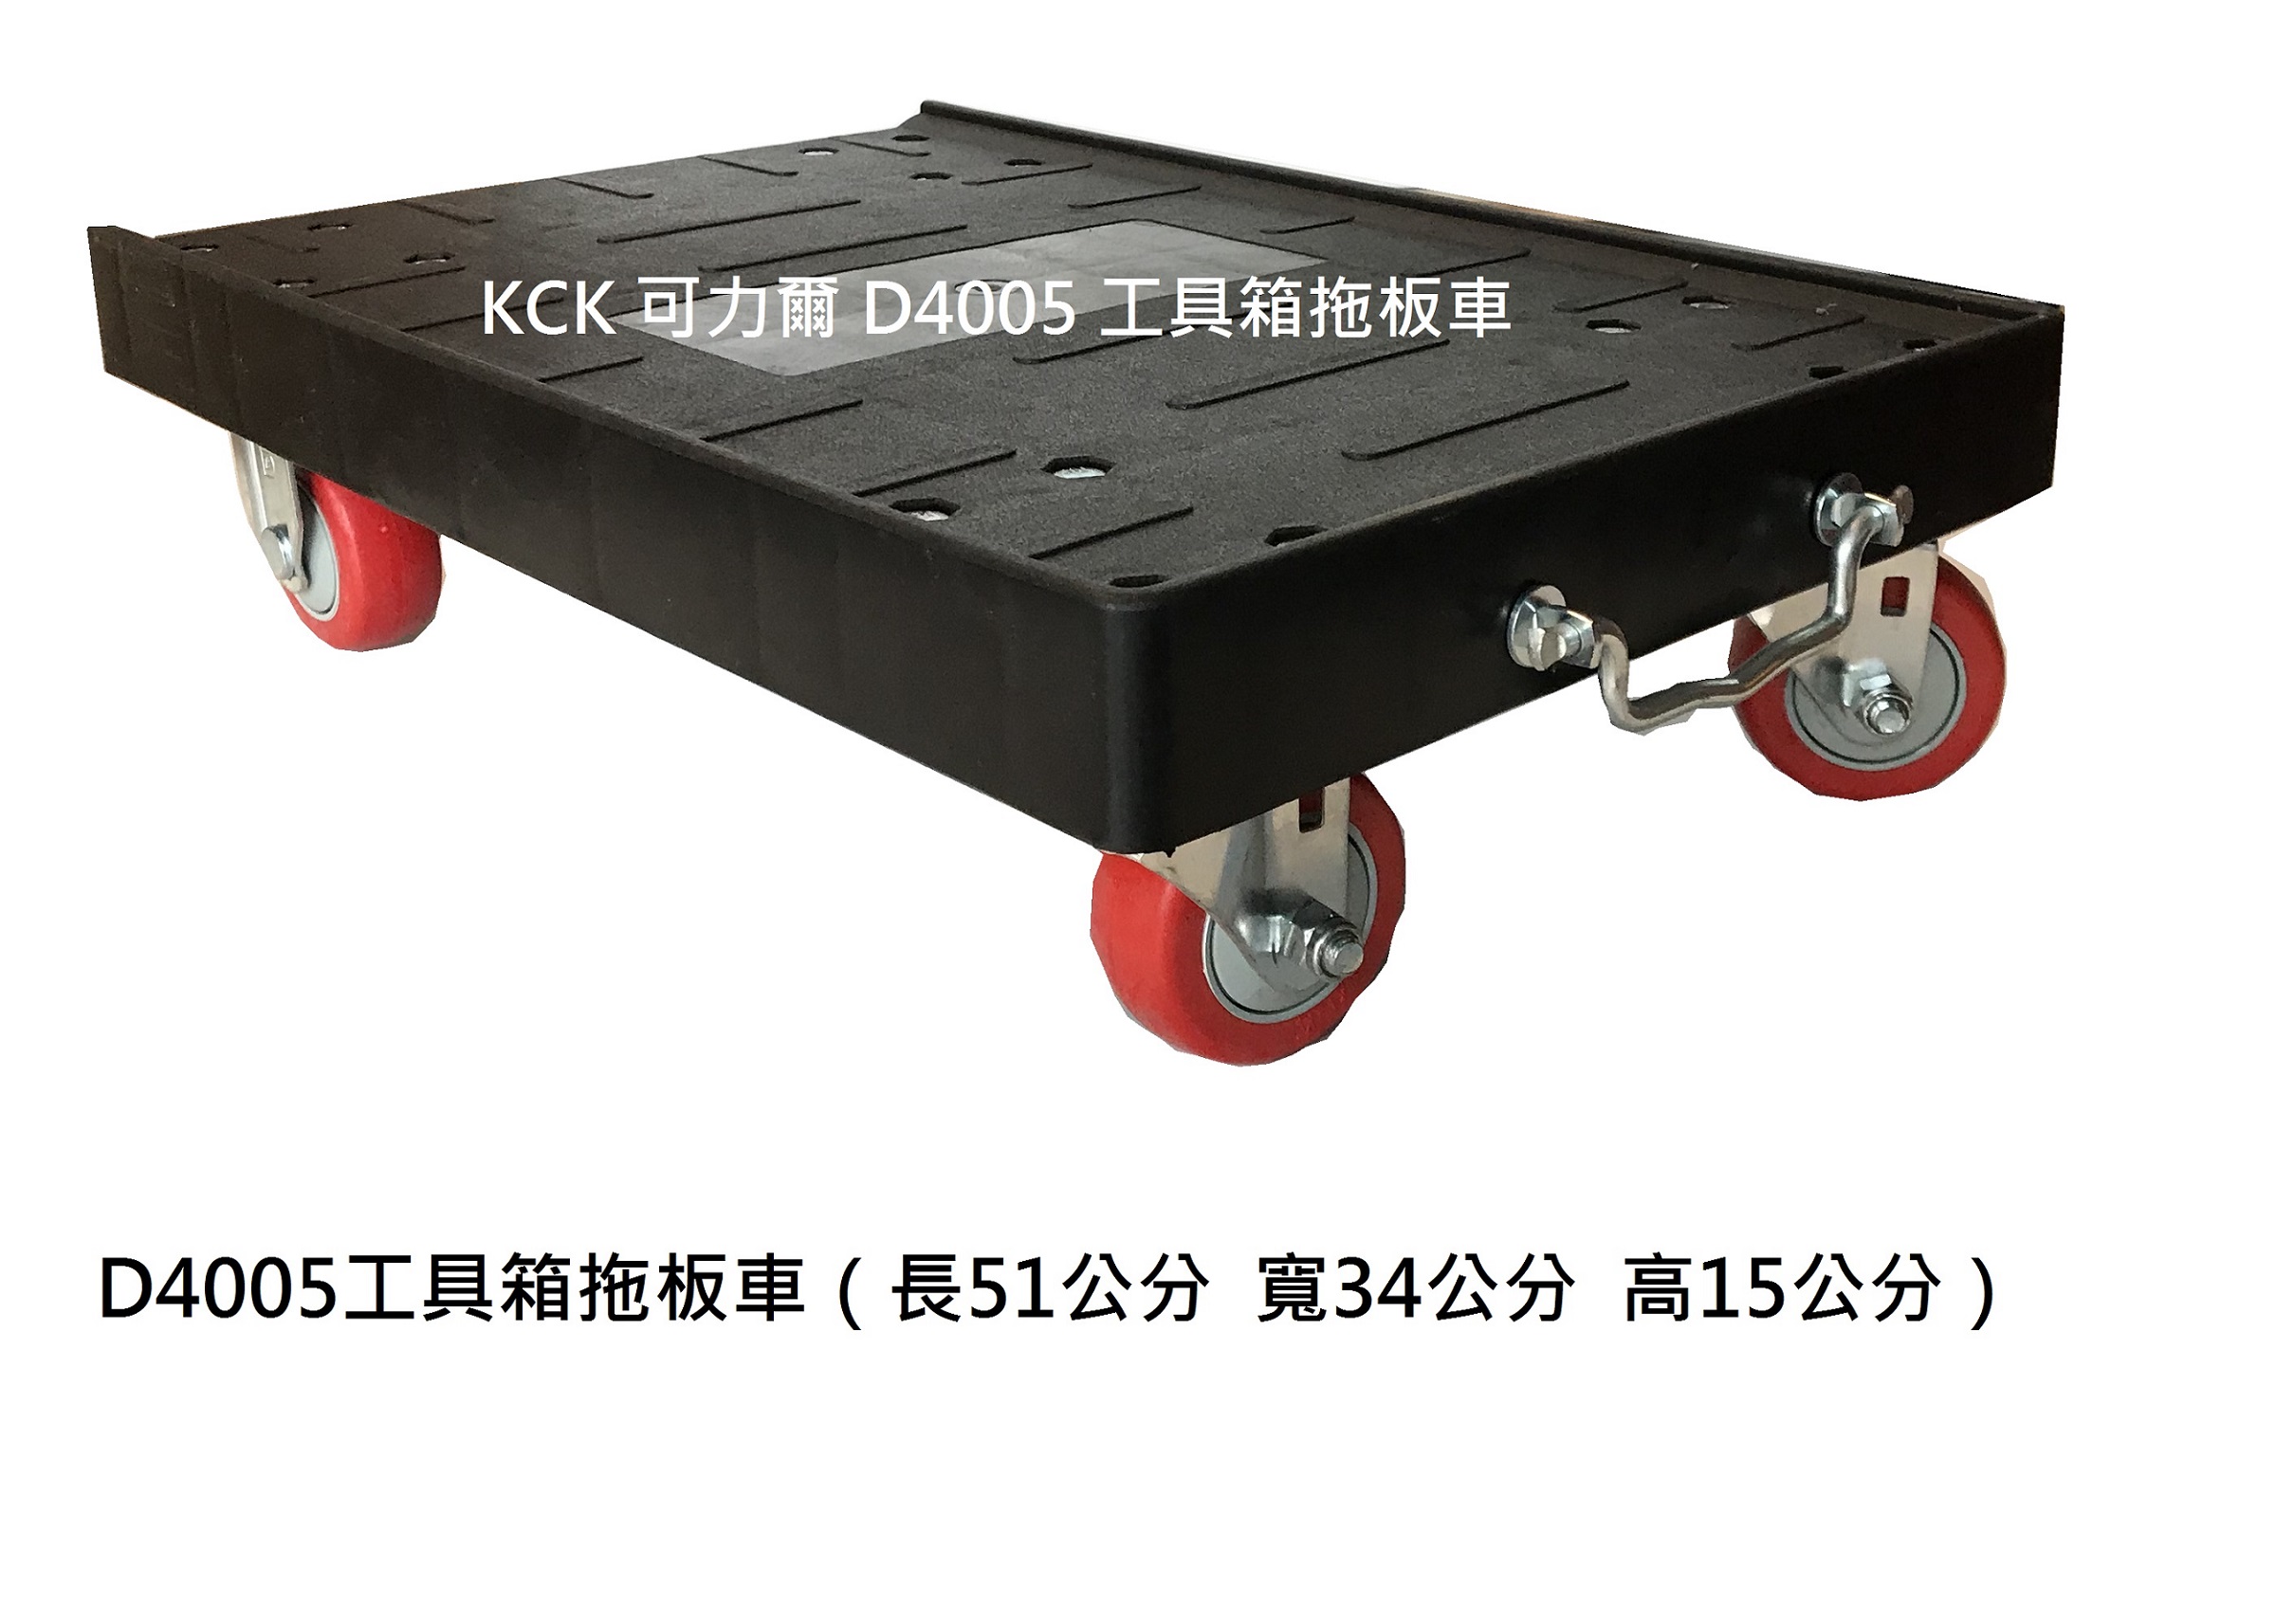 工具箱拖板車 D4005